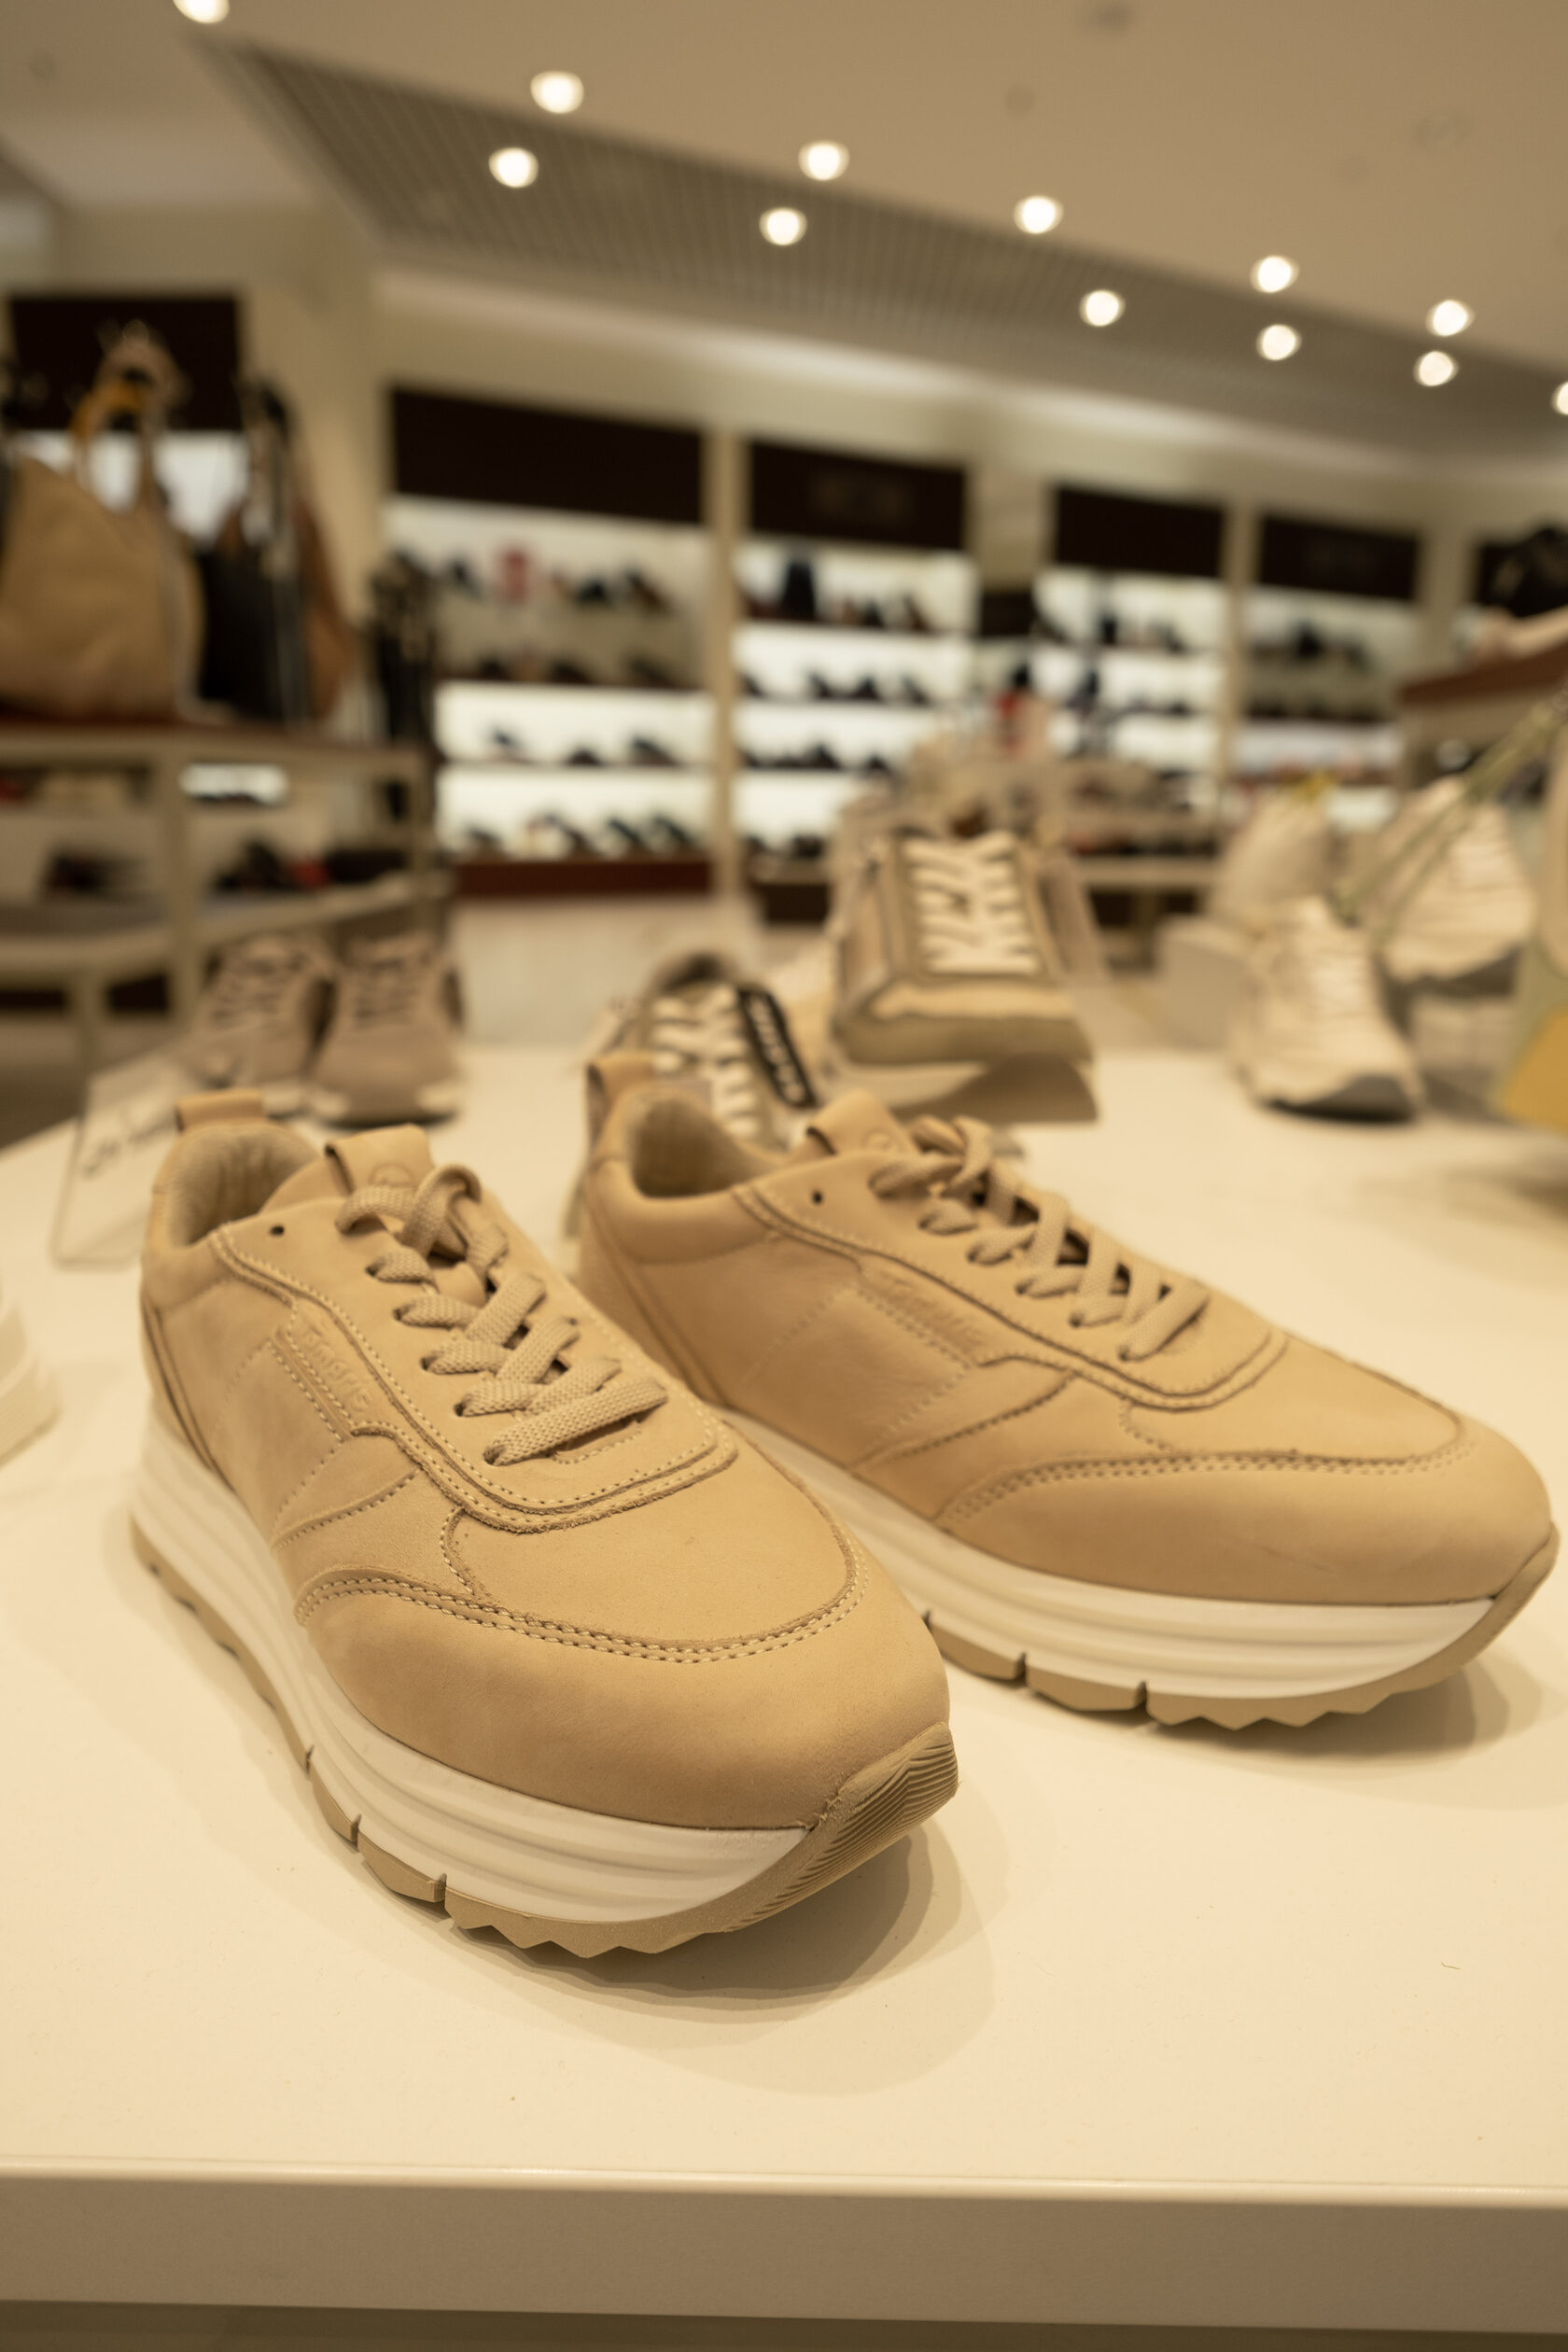 Perhaps promotion Attendance Ilgtspējīgi un stilīgi apavi: aktuālās tendences un stilista ieteikumi -  DELFI